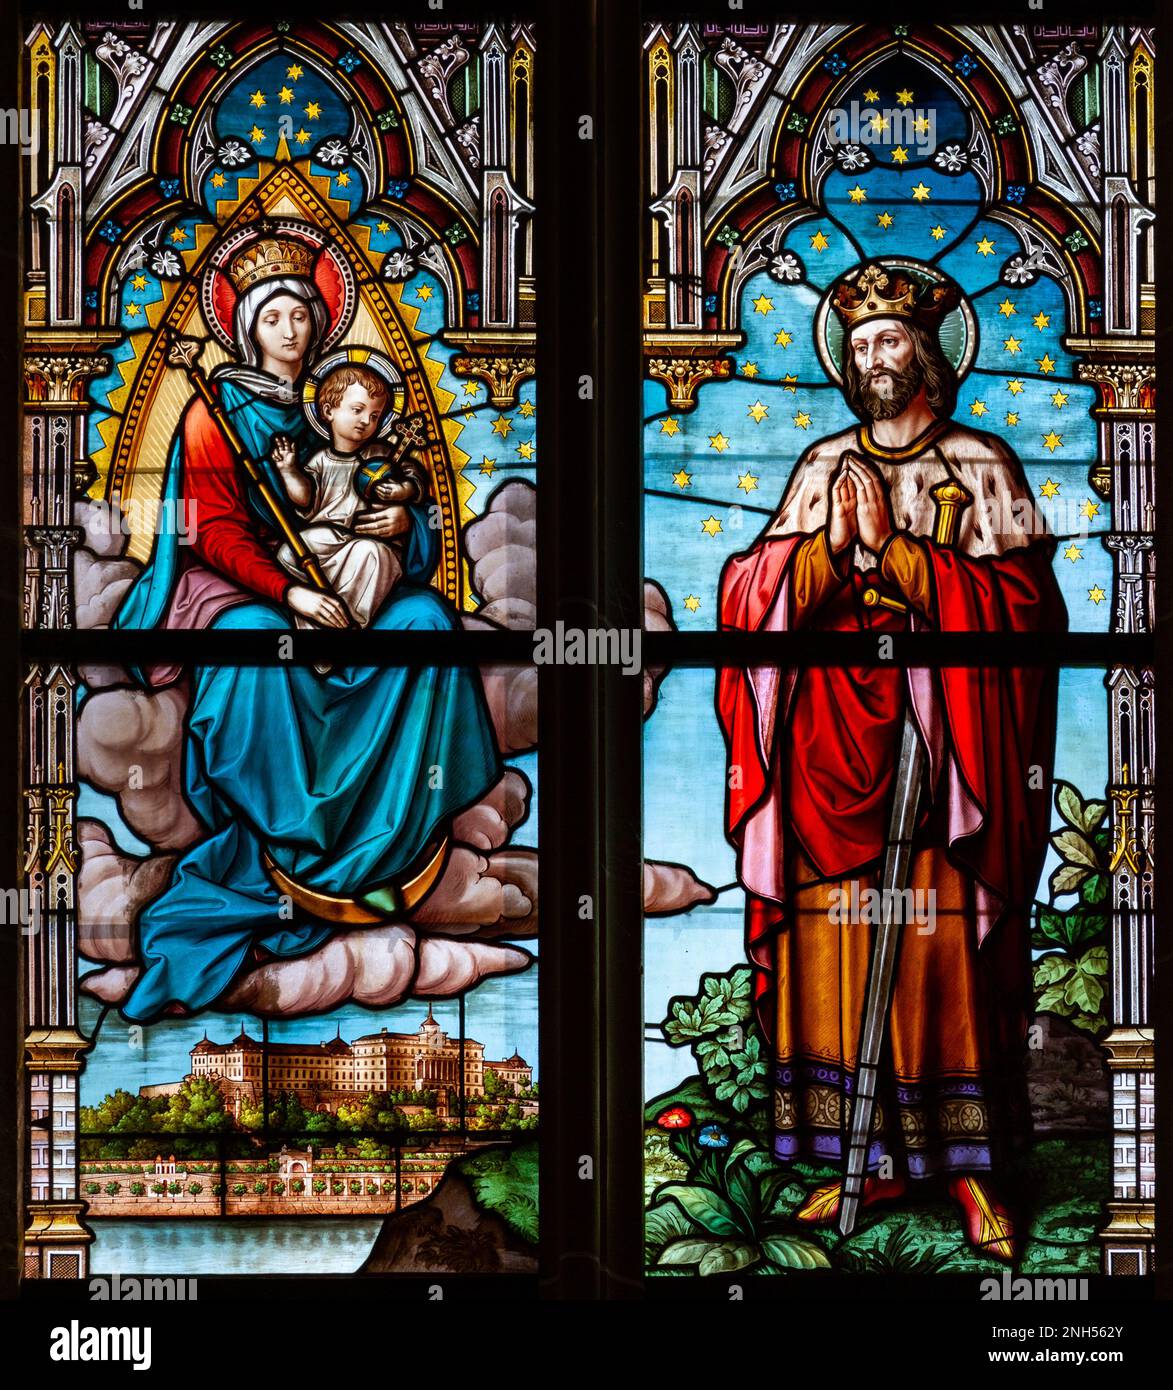 Vidrieras que representan a la Virgen María con el Niño Jesús y el Rey San Esteban I. (de Hungría) en la Catedral de Santa Isabel de Košice. Foto de stock